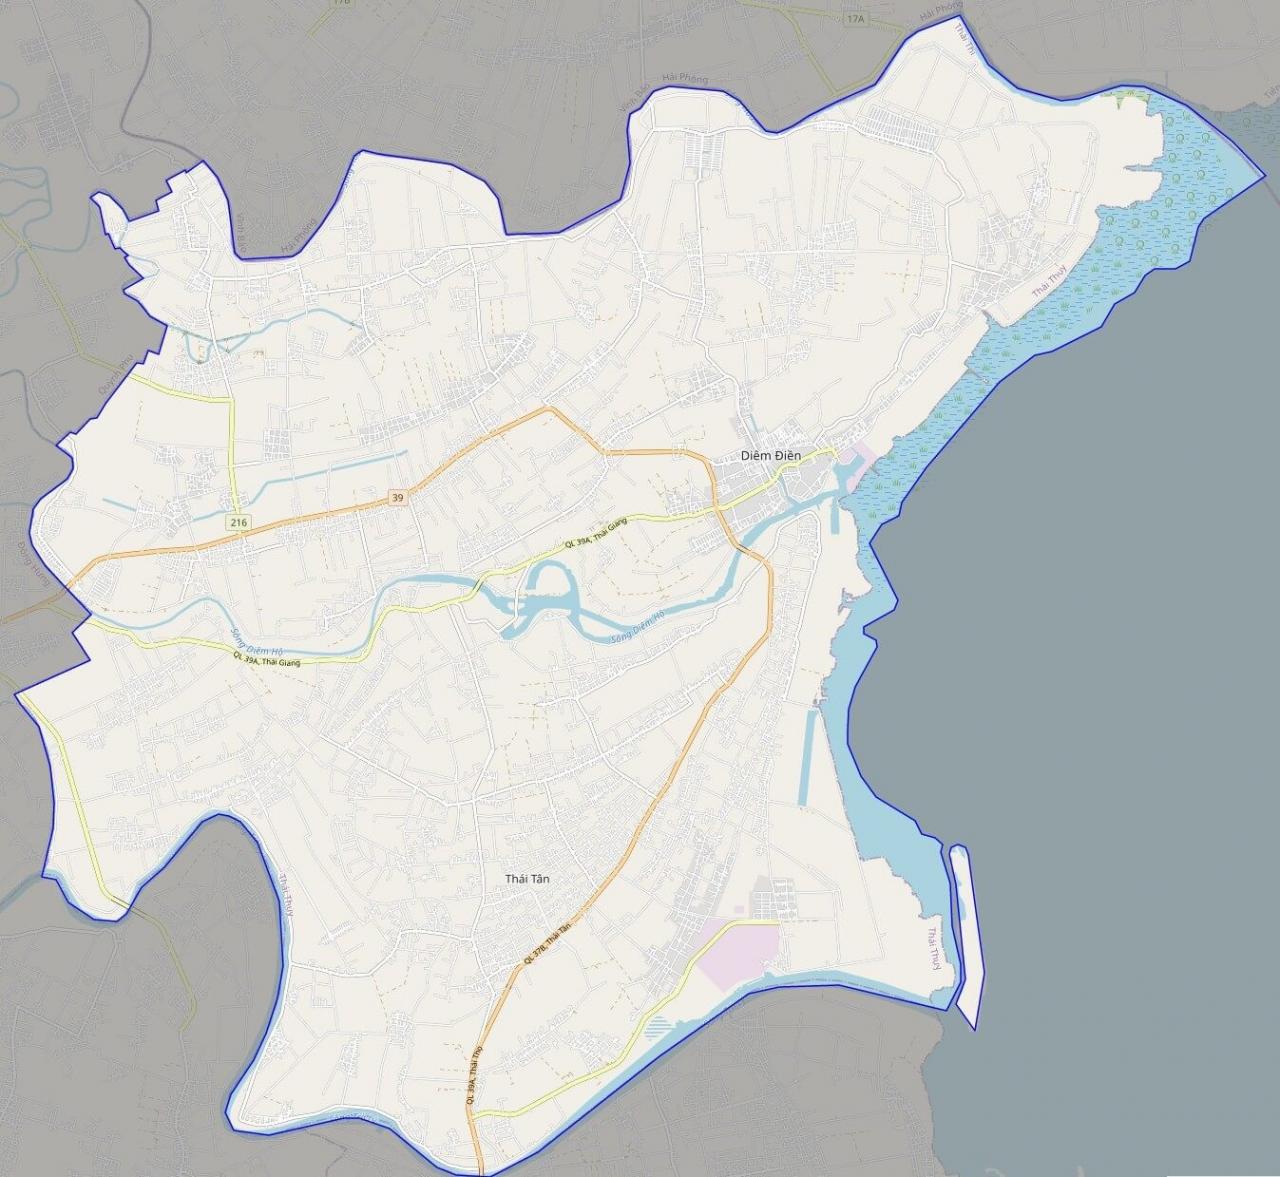 Bản đồ vệ tinh huyện Thái Thụy